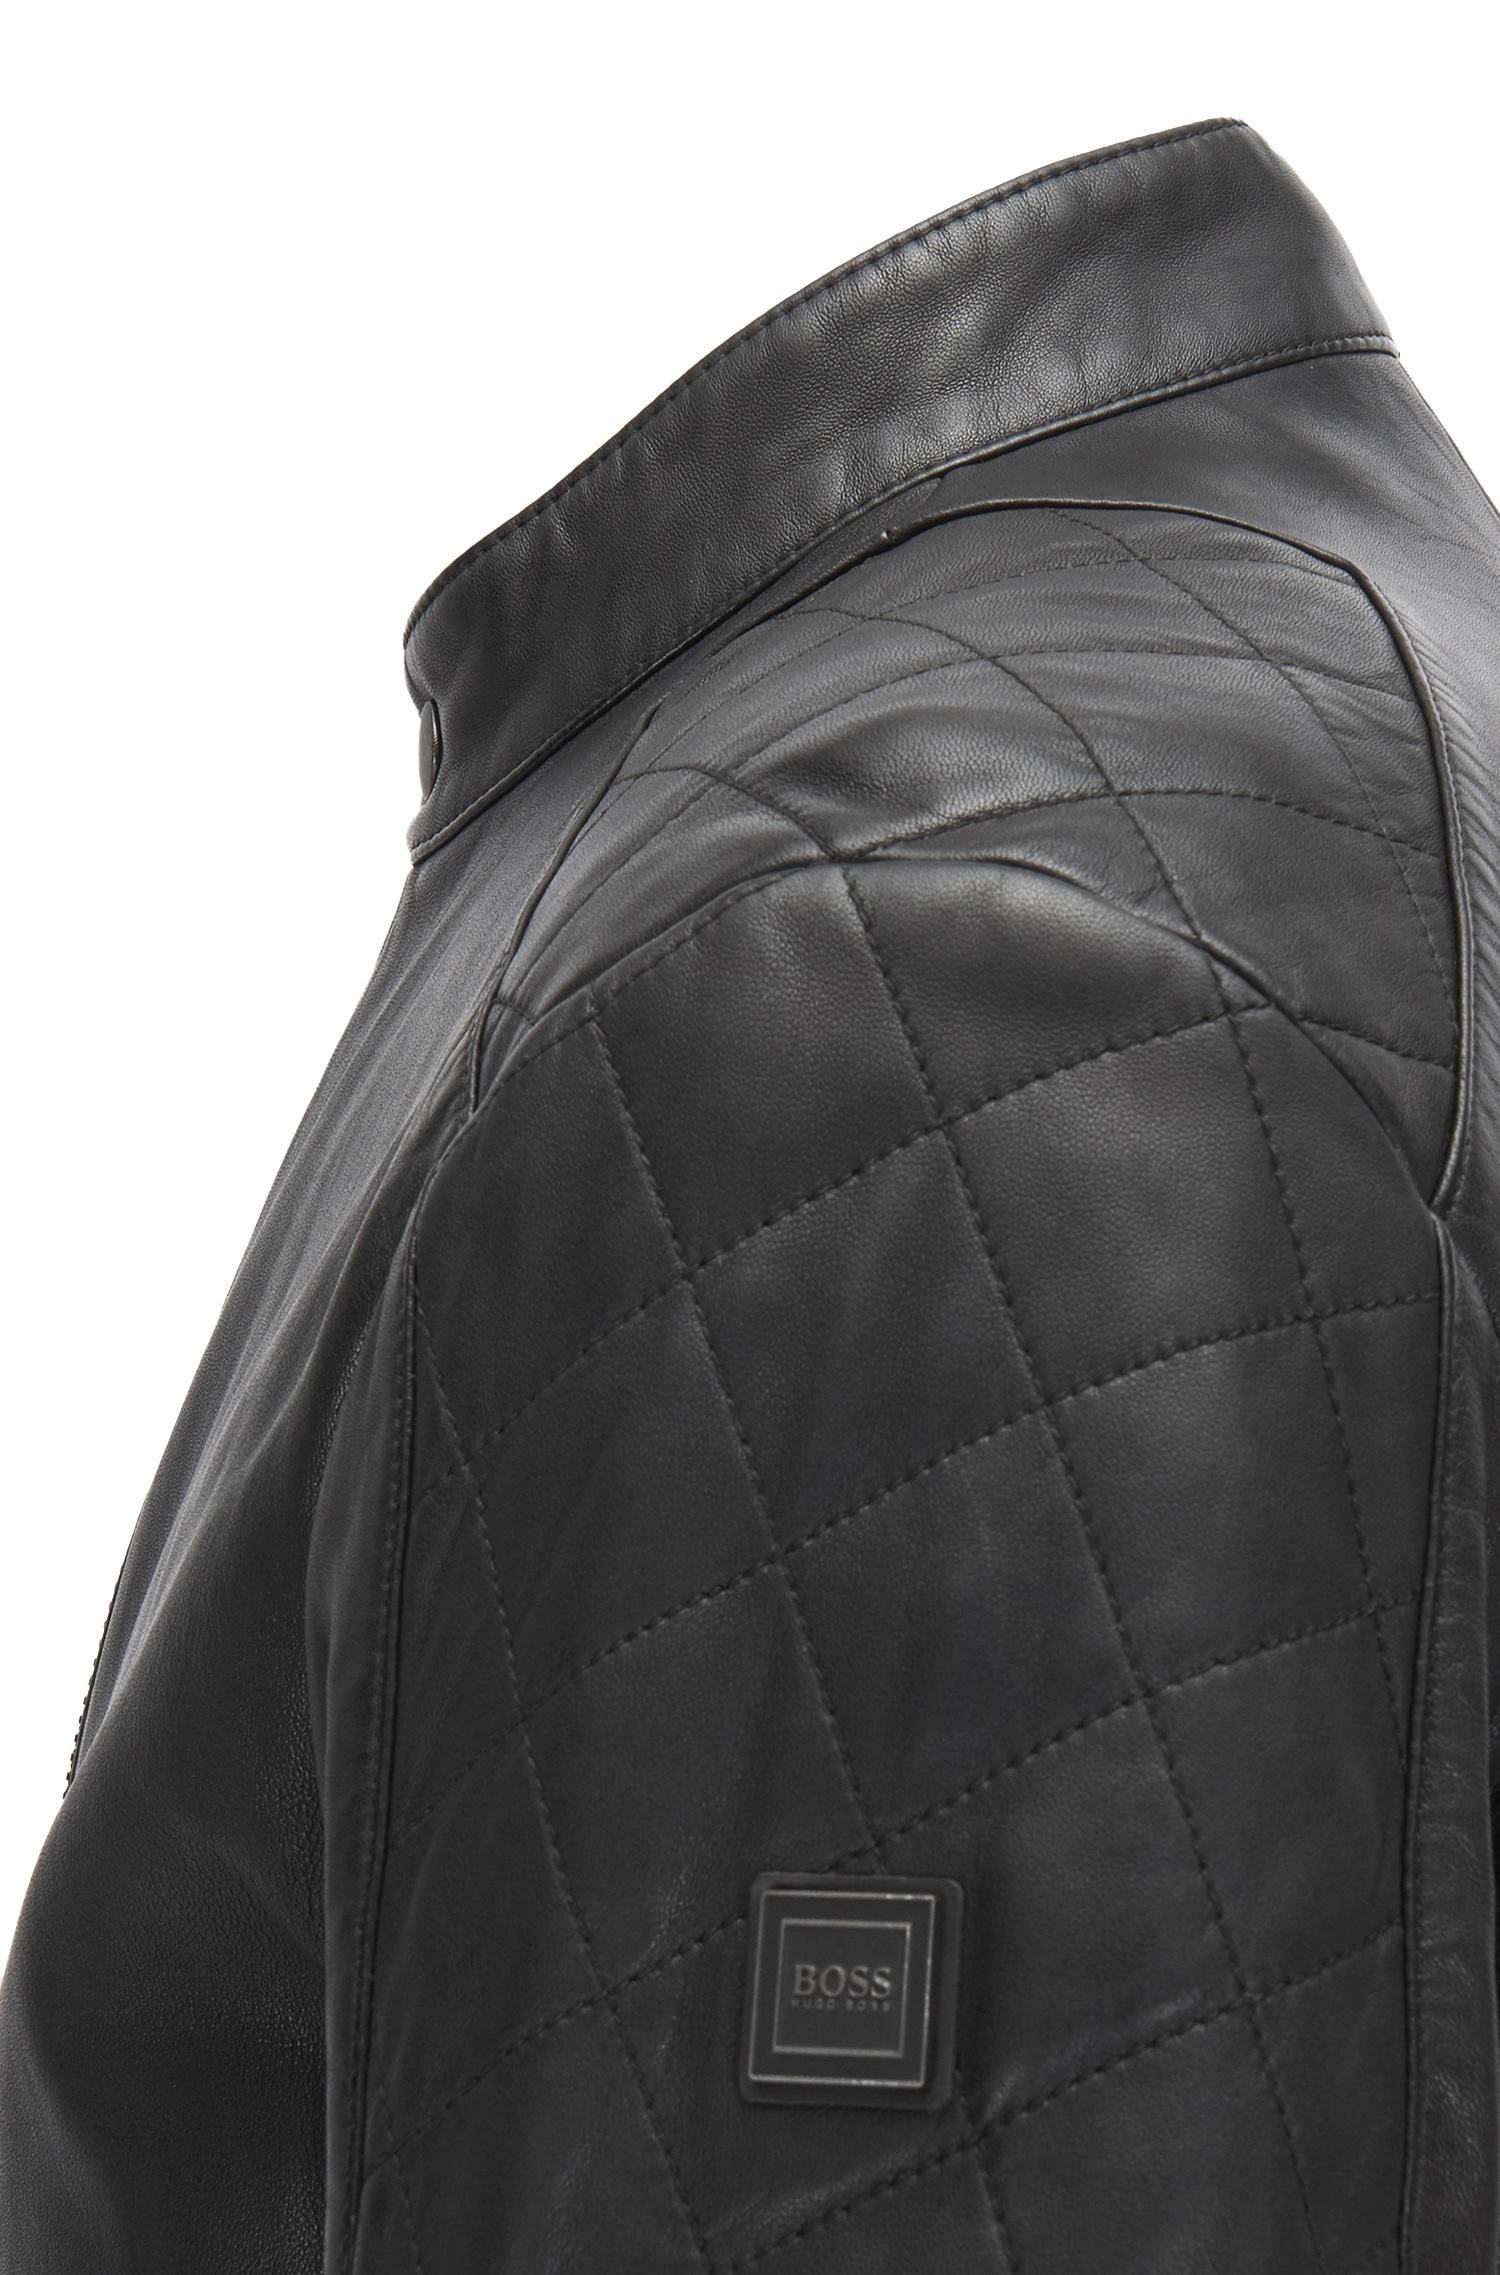 BOSS by HUGO BOSS Sheepskin Leather Jacket | Jeepo in Black for Men - Lyst